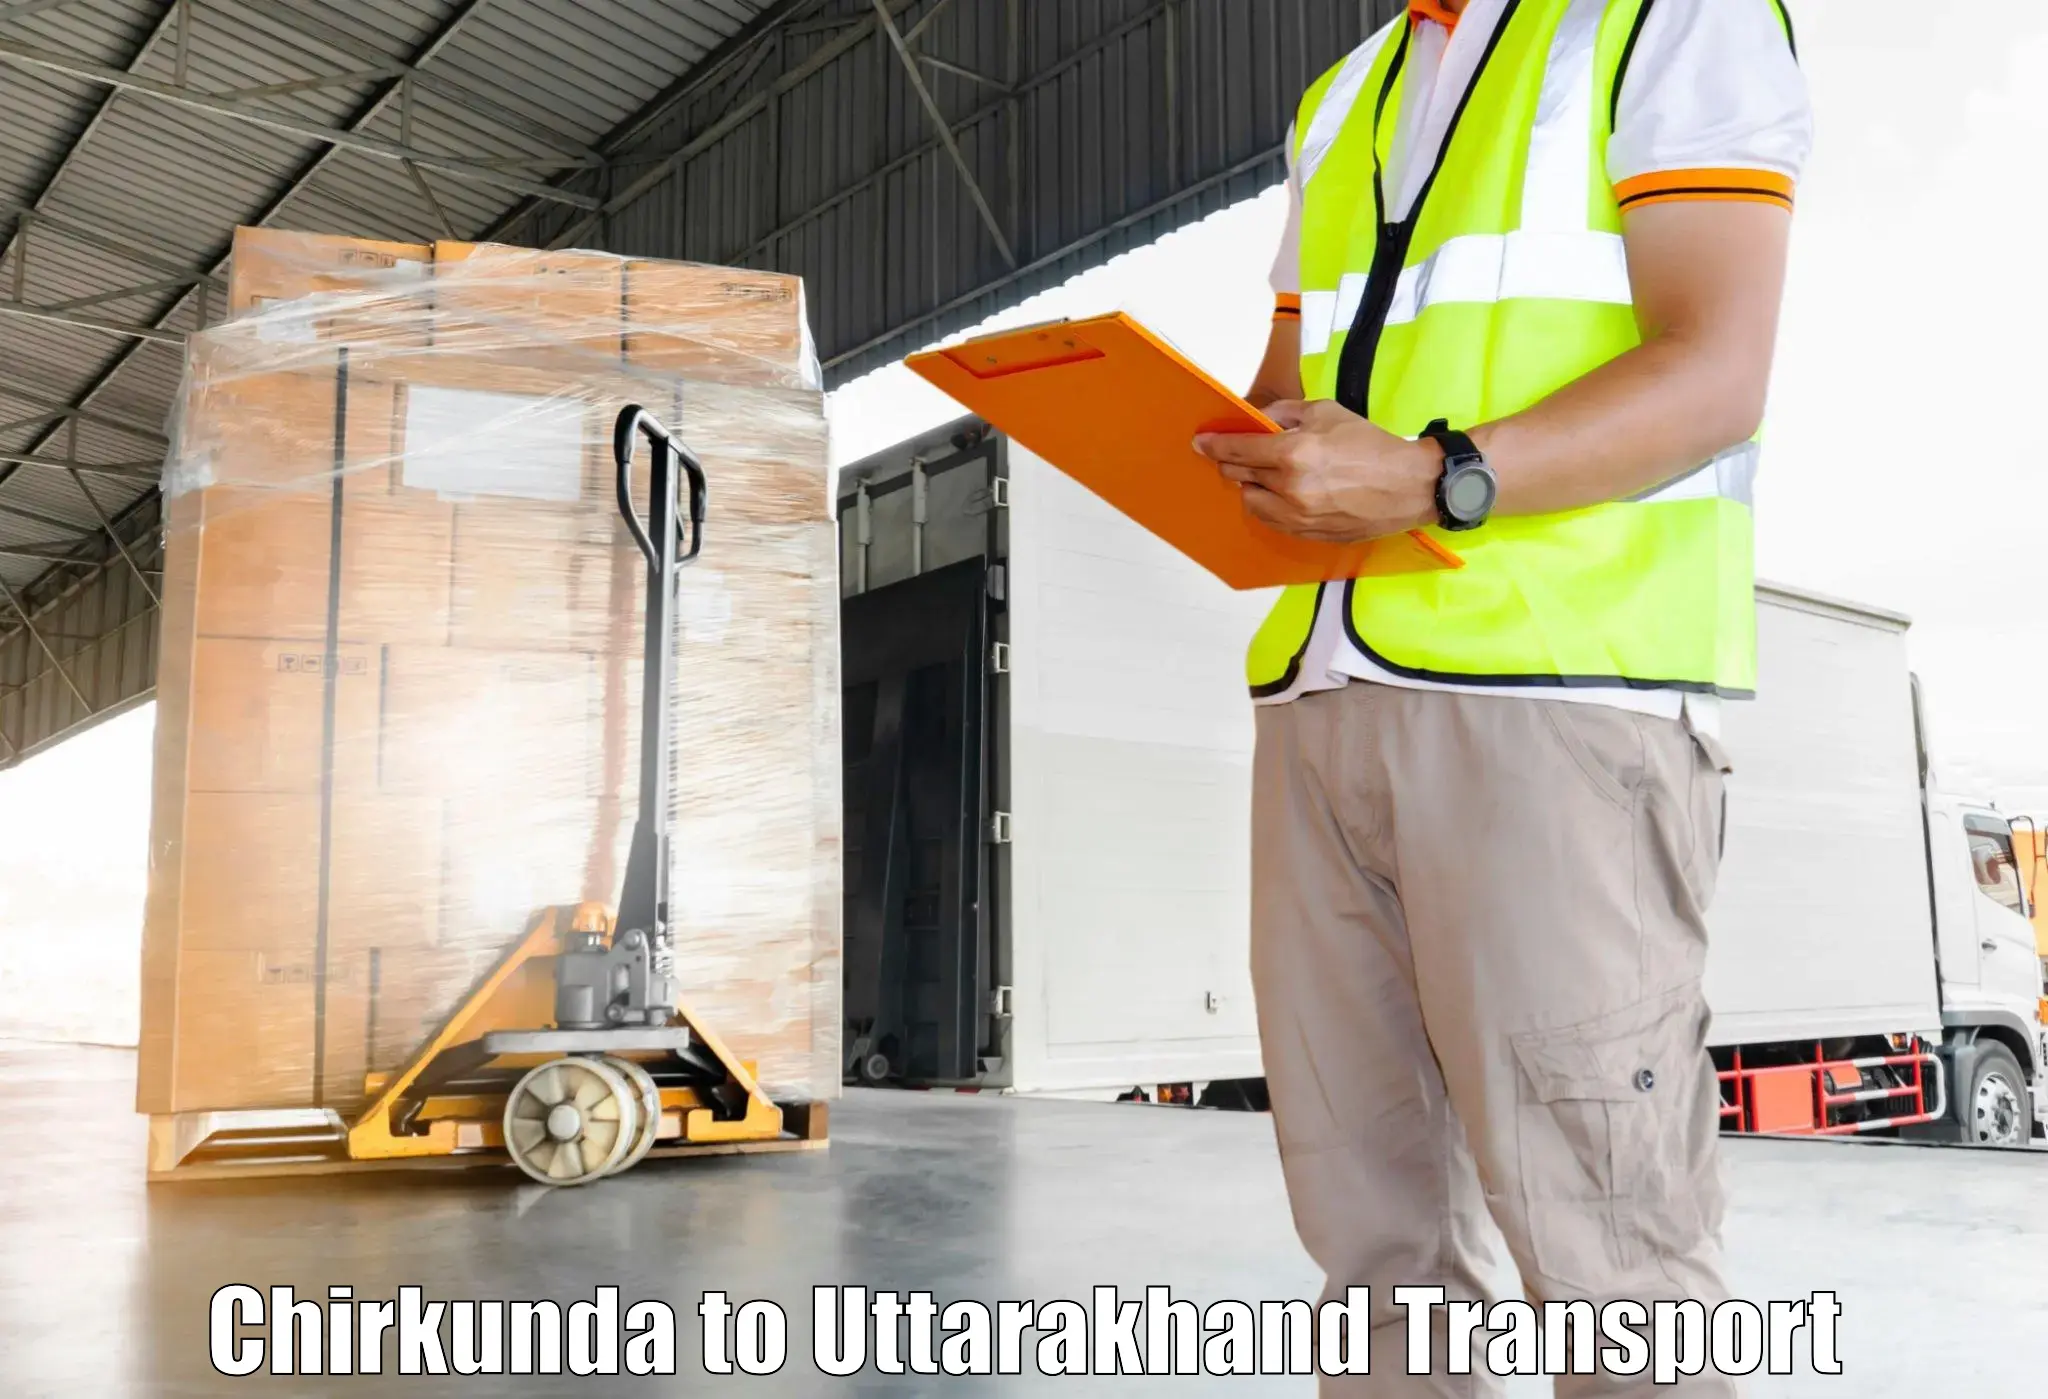 Commercial transport service Chirkunda to Didihat